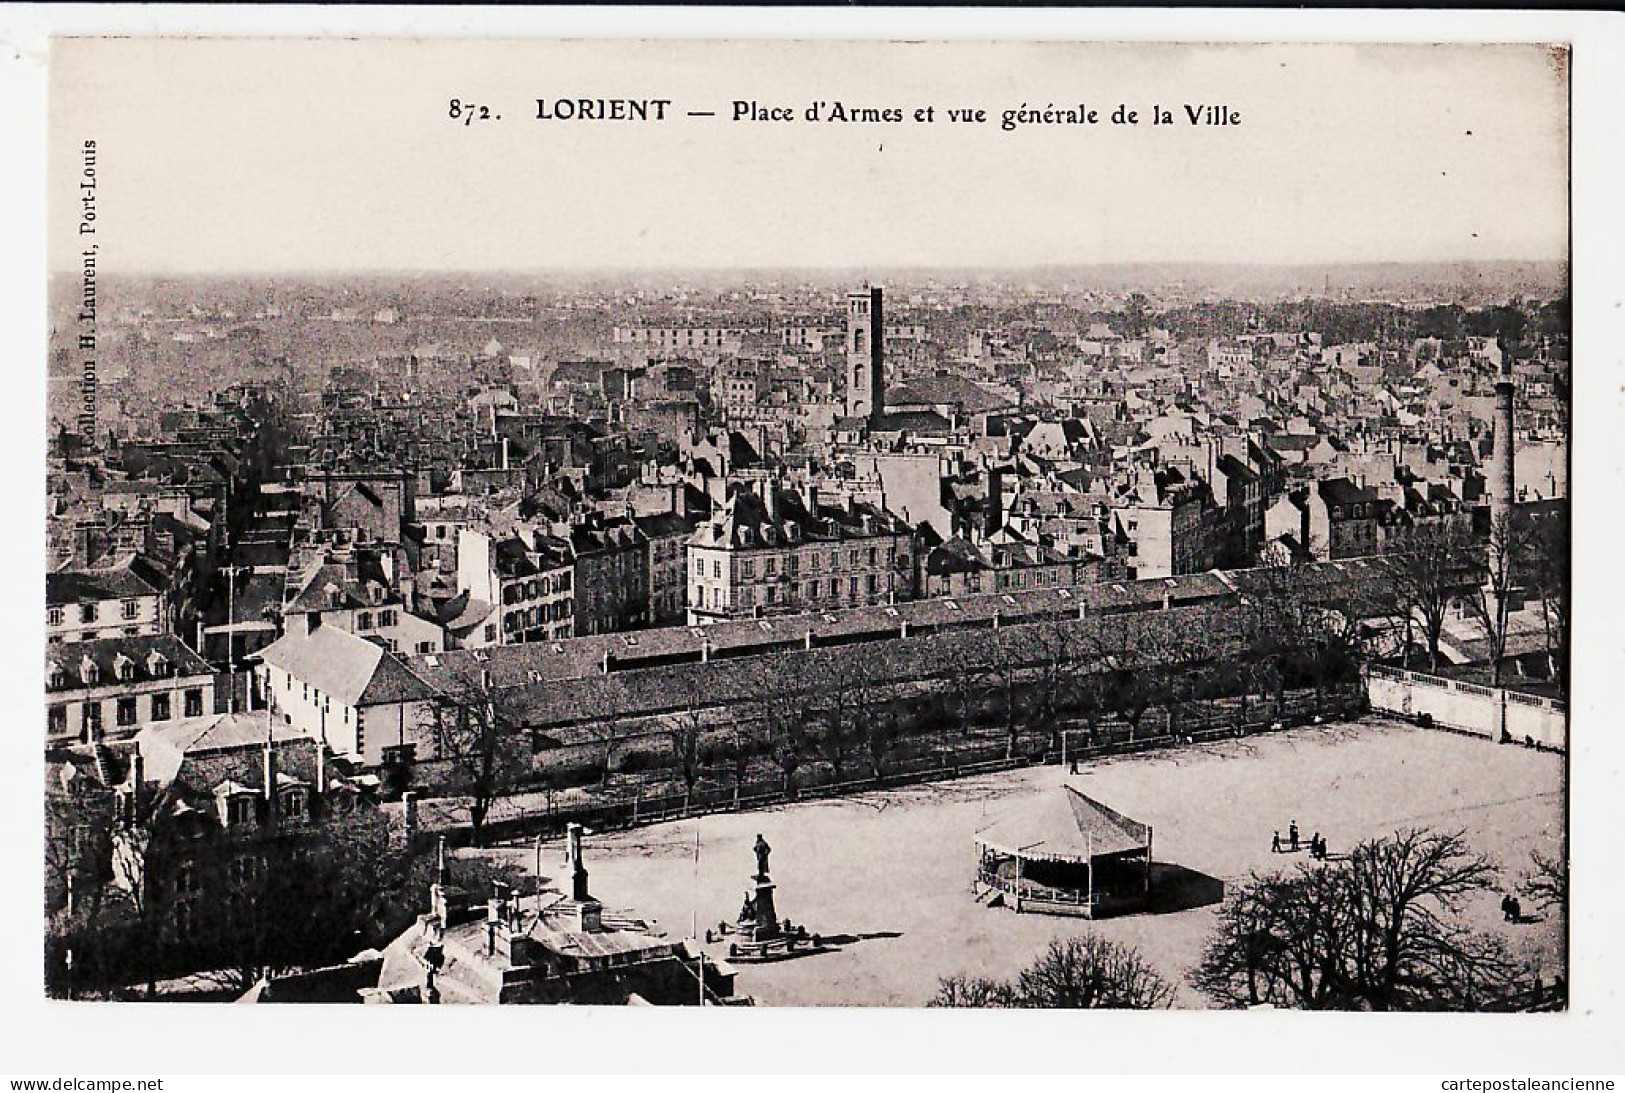 10562 ● LORIENT Place D' ARMES Kiosque Musique Vue Generale De La Ville 1910s Collection LAURENT 872/ Morbihan - Lorient